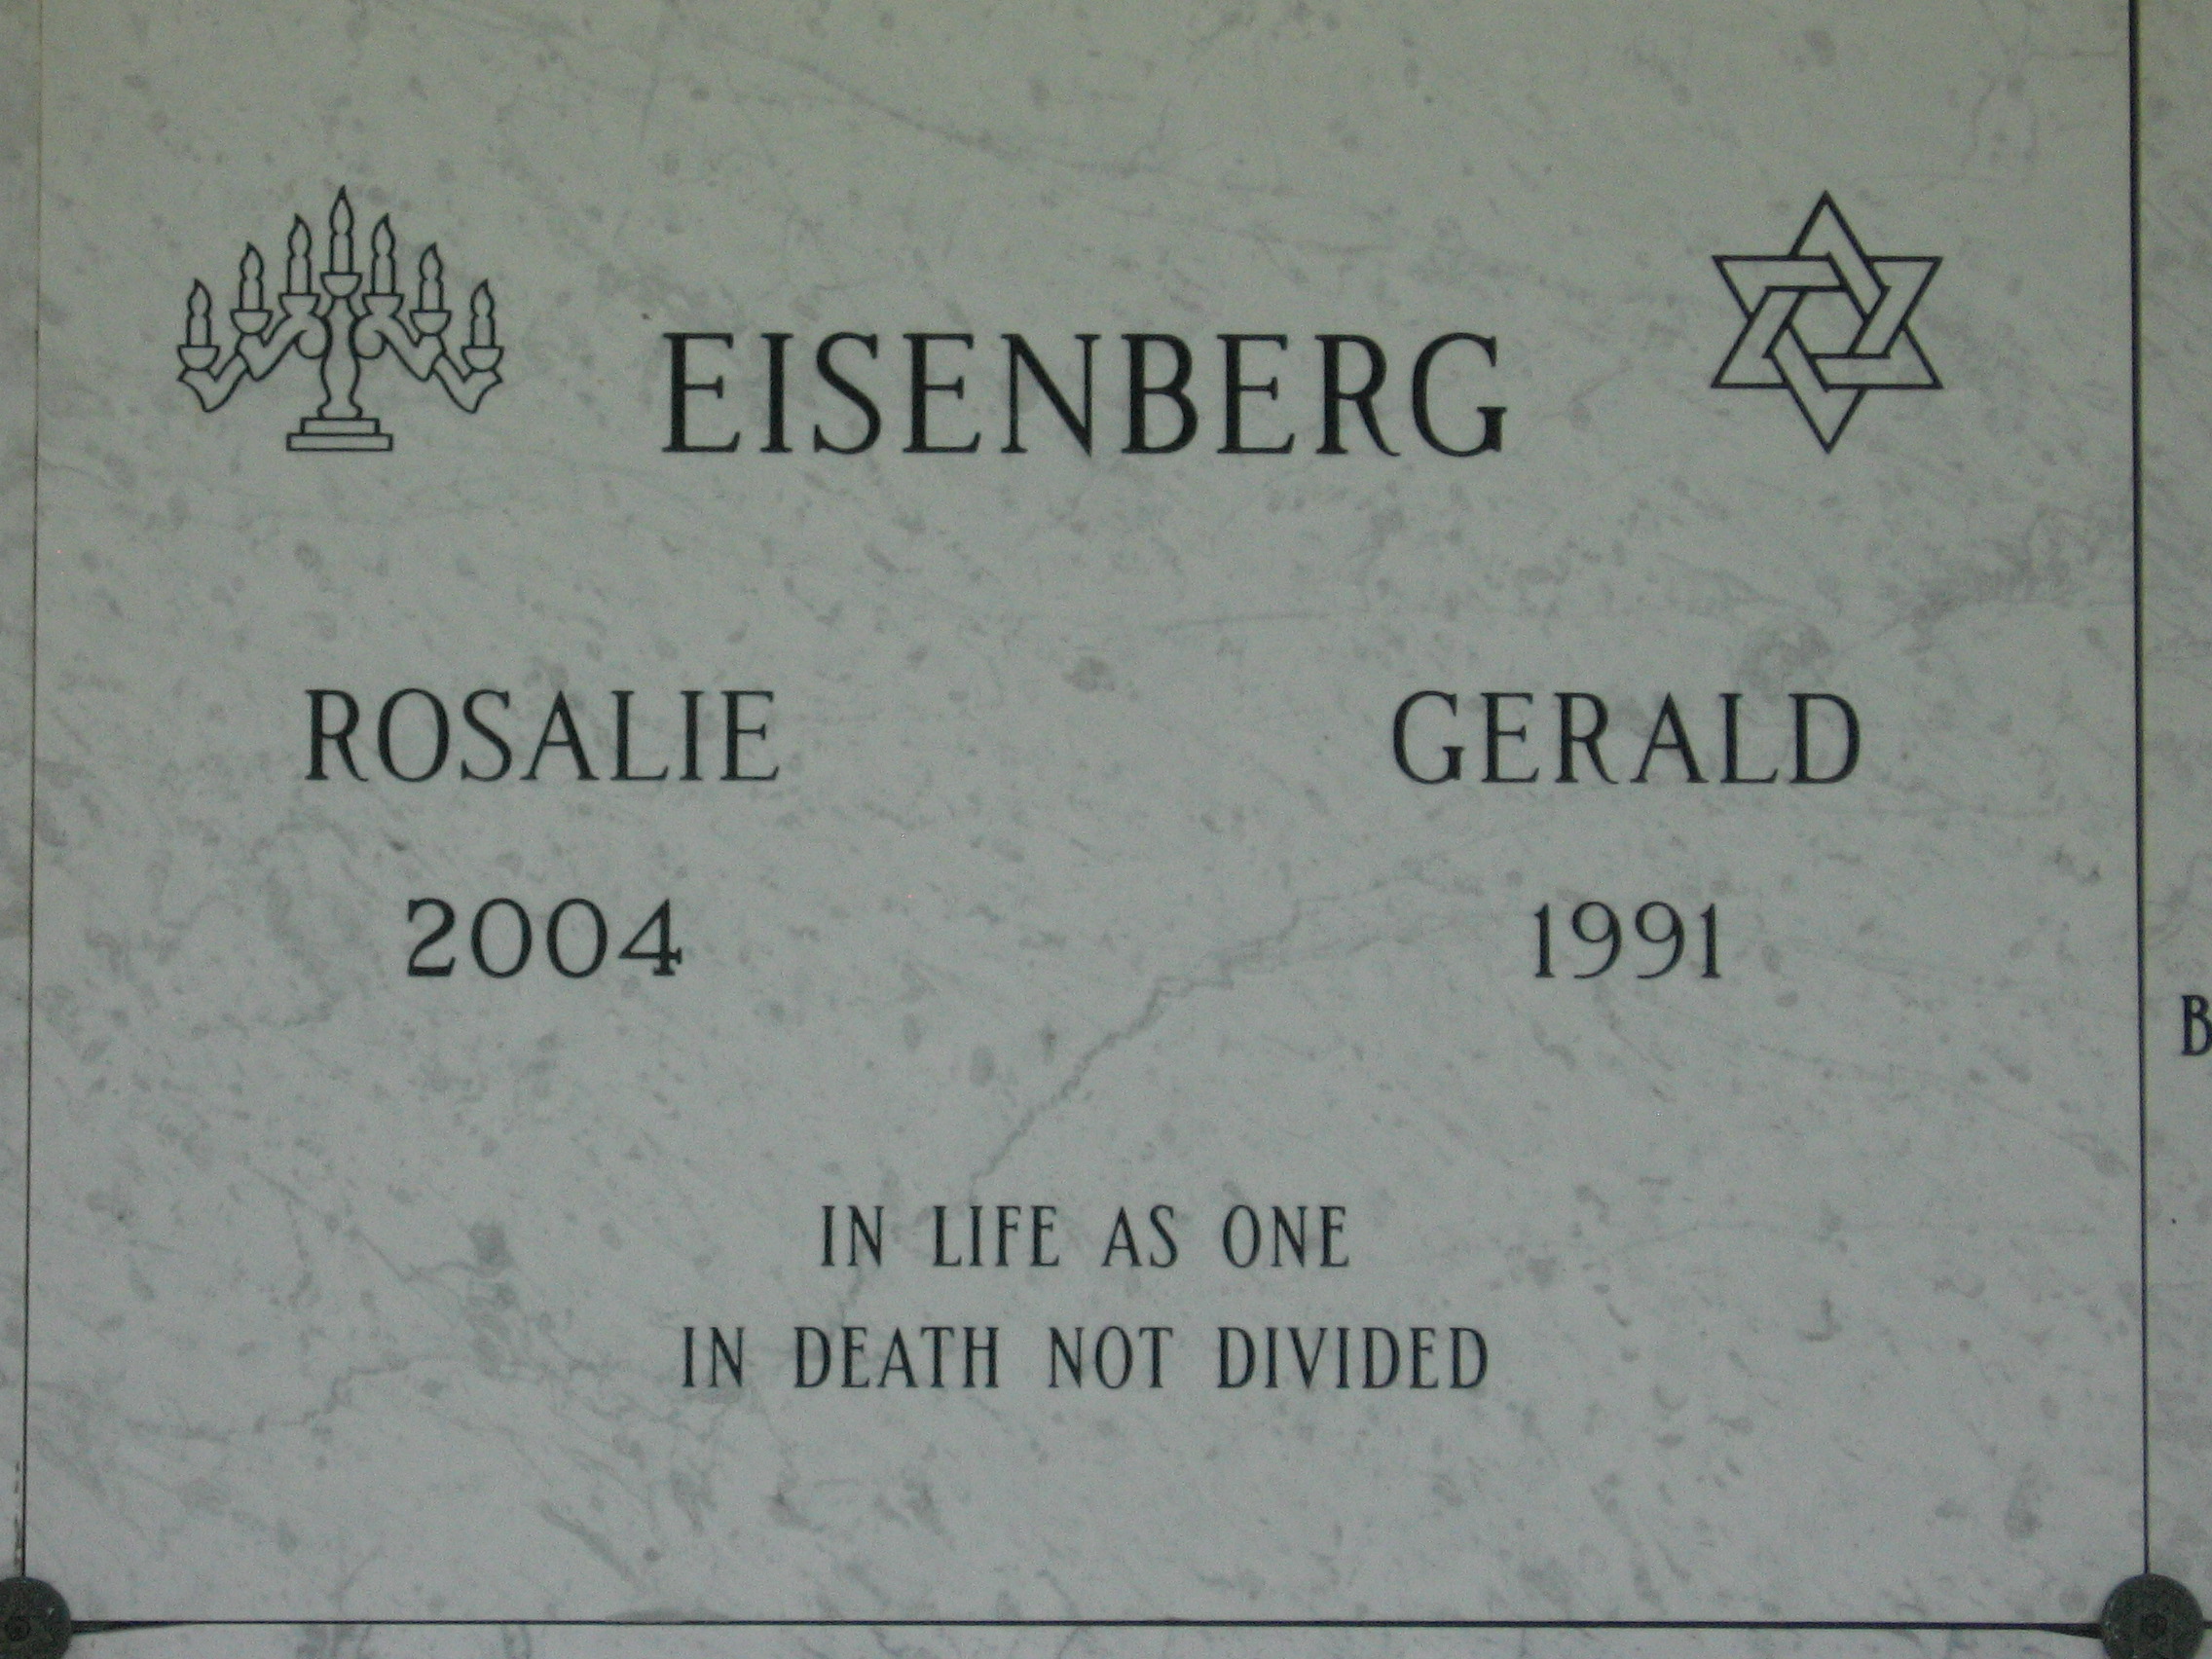 Gerald Eisenberg